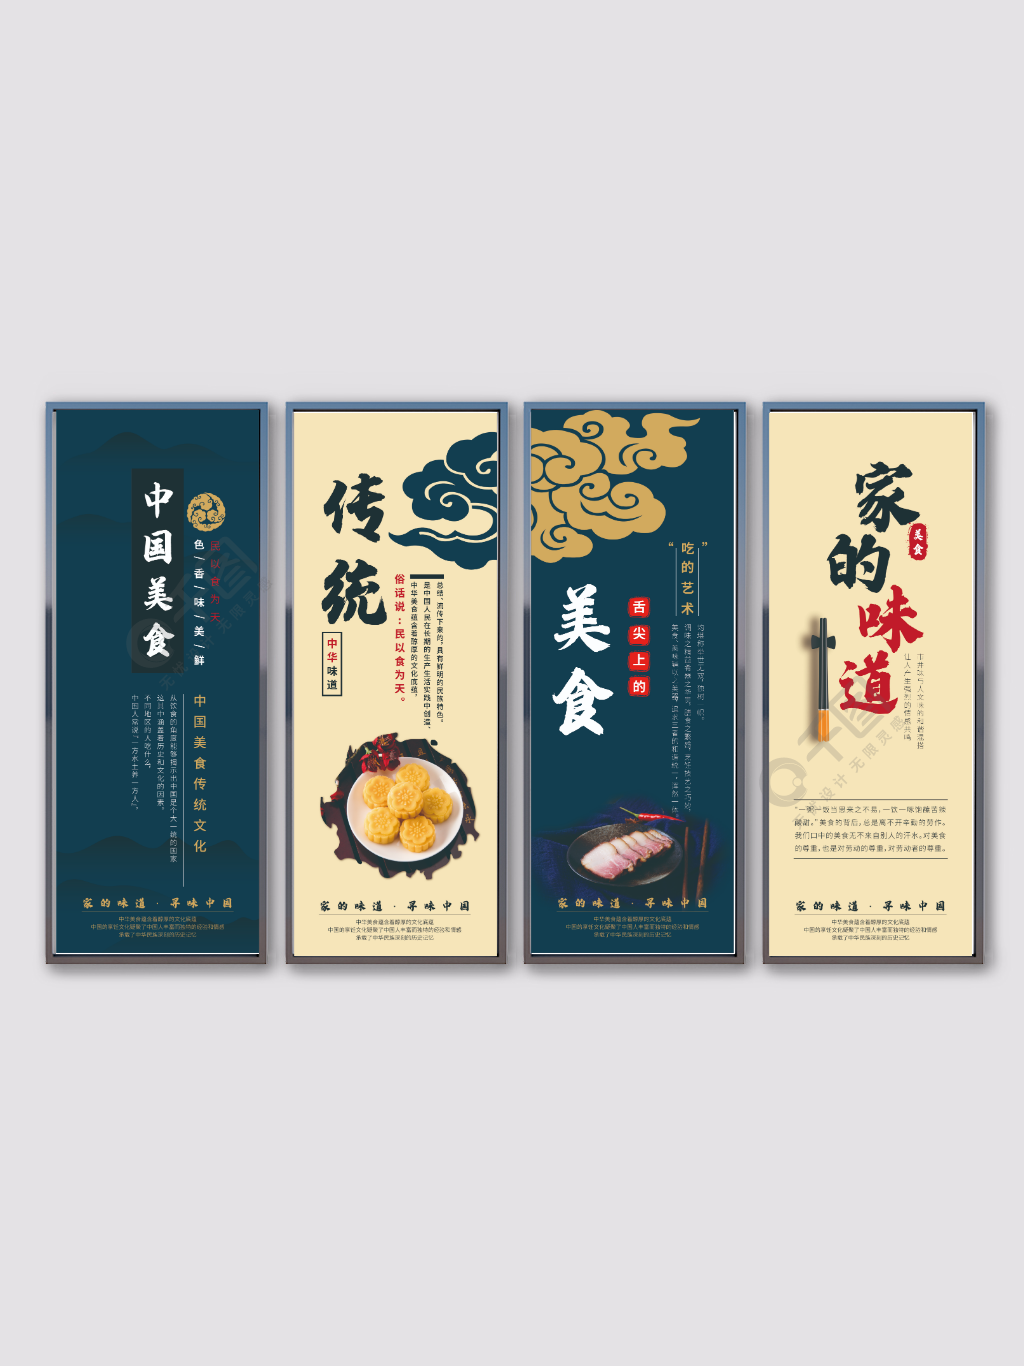 中国风水墨美食餐饮文化挂画系列展板3月前发布